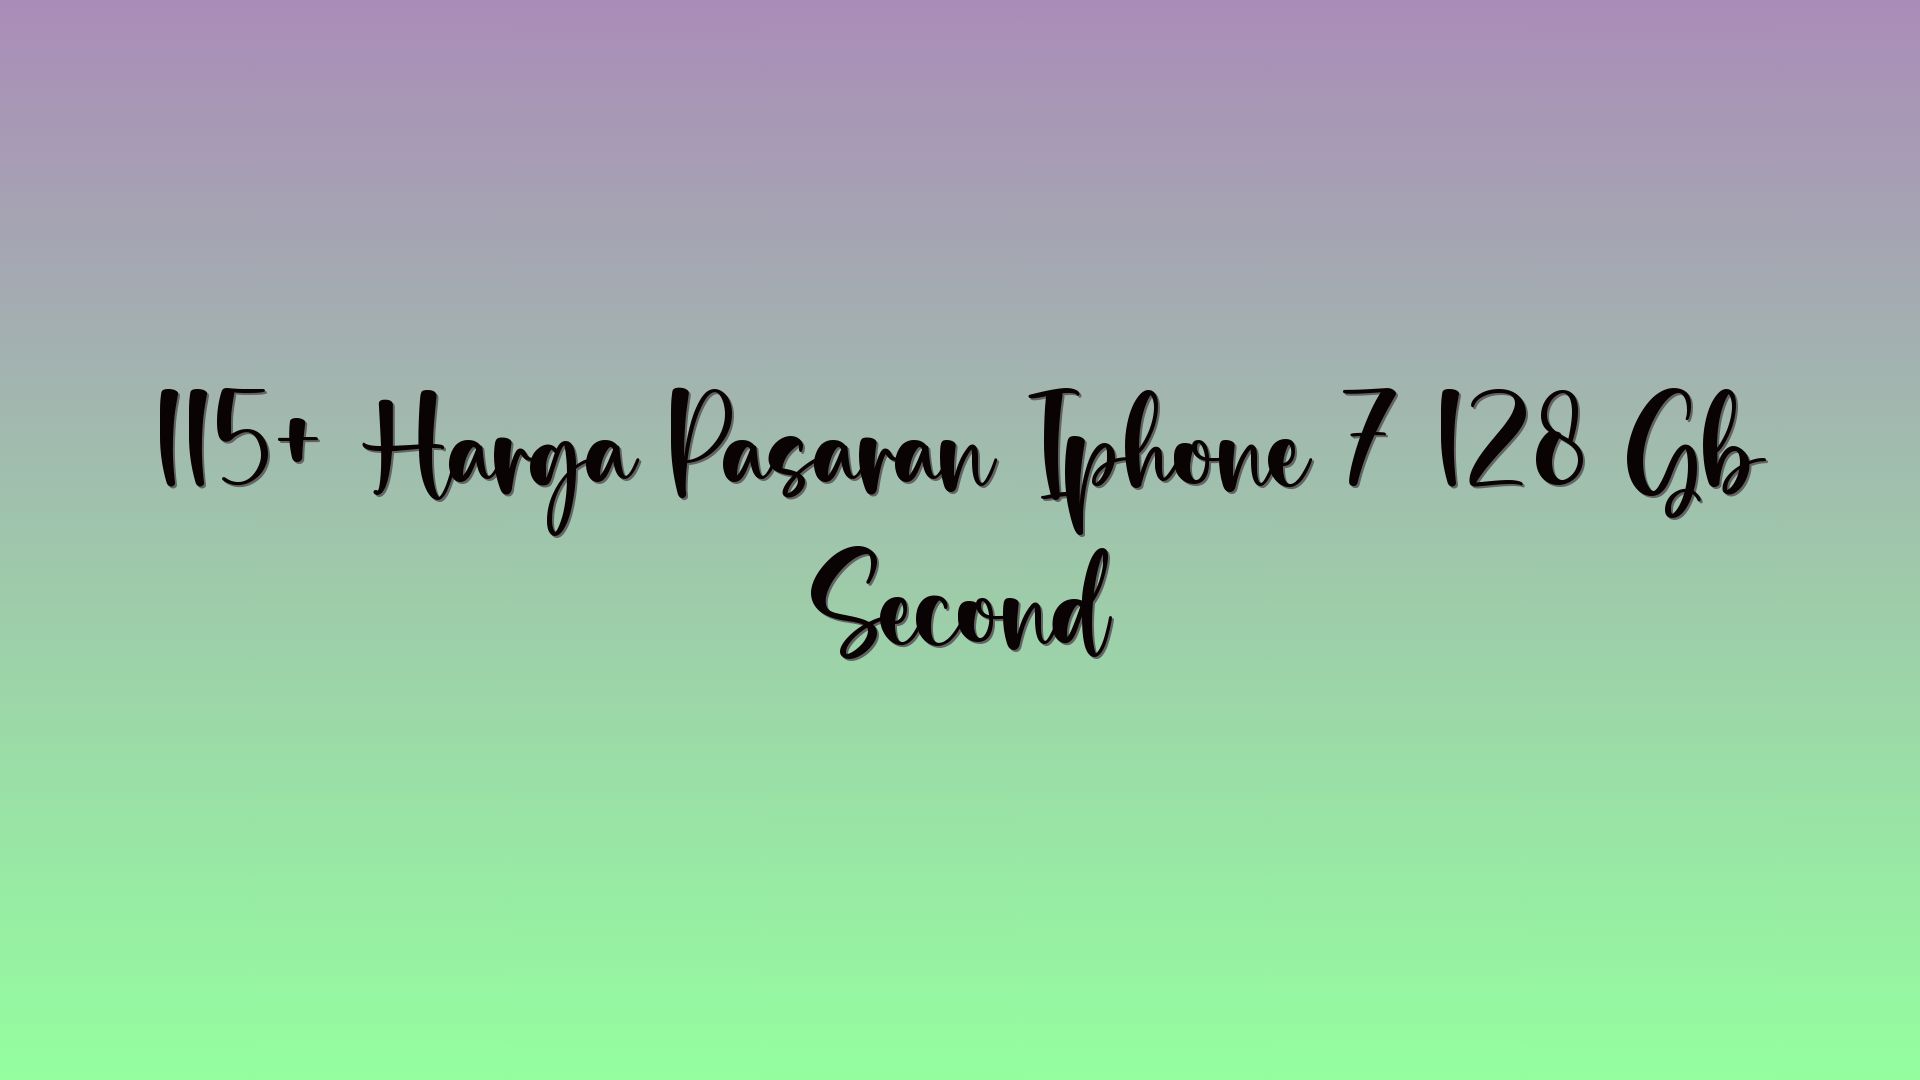 115+ Harga Pasaran Iphone 7 128 Gb Second